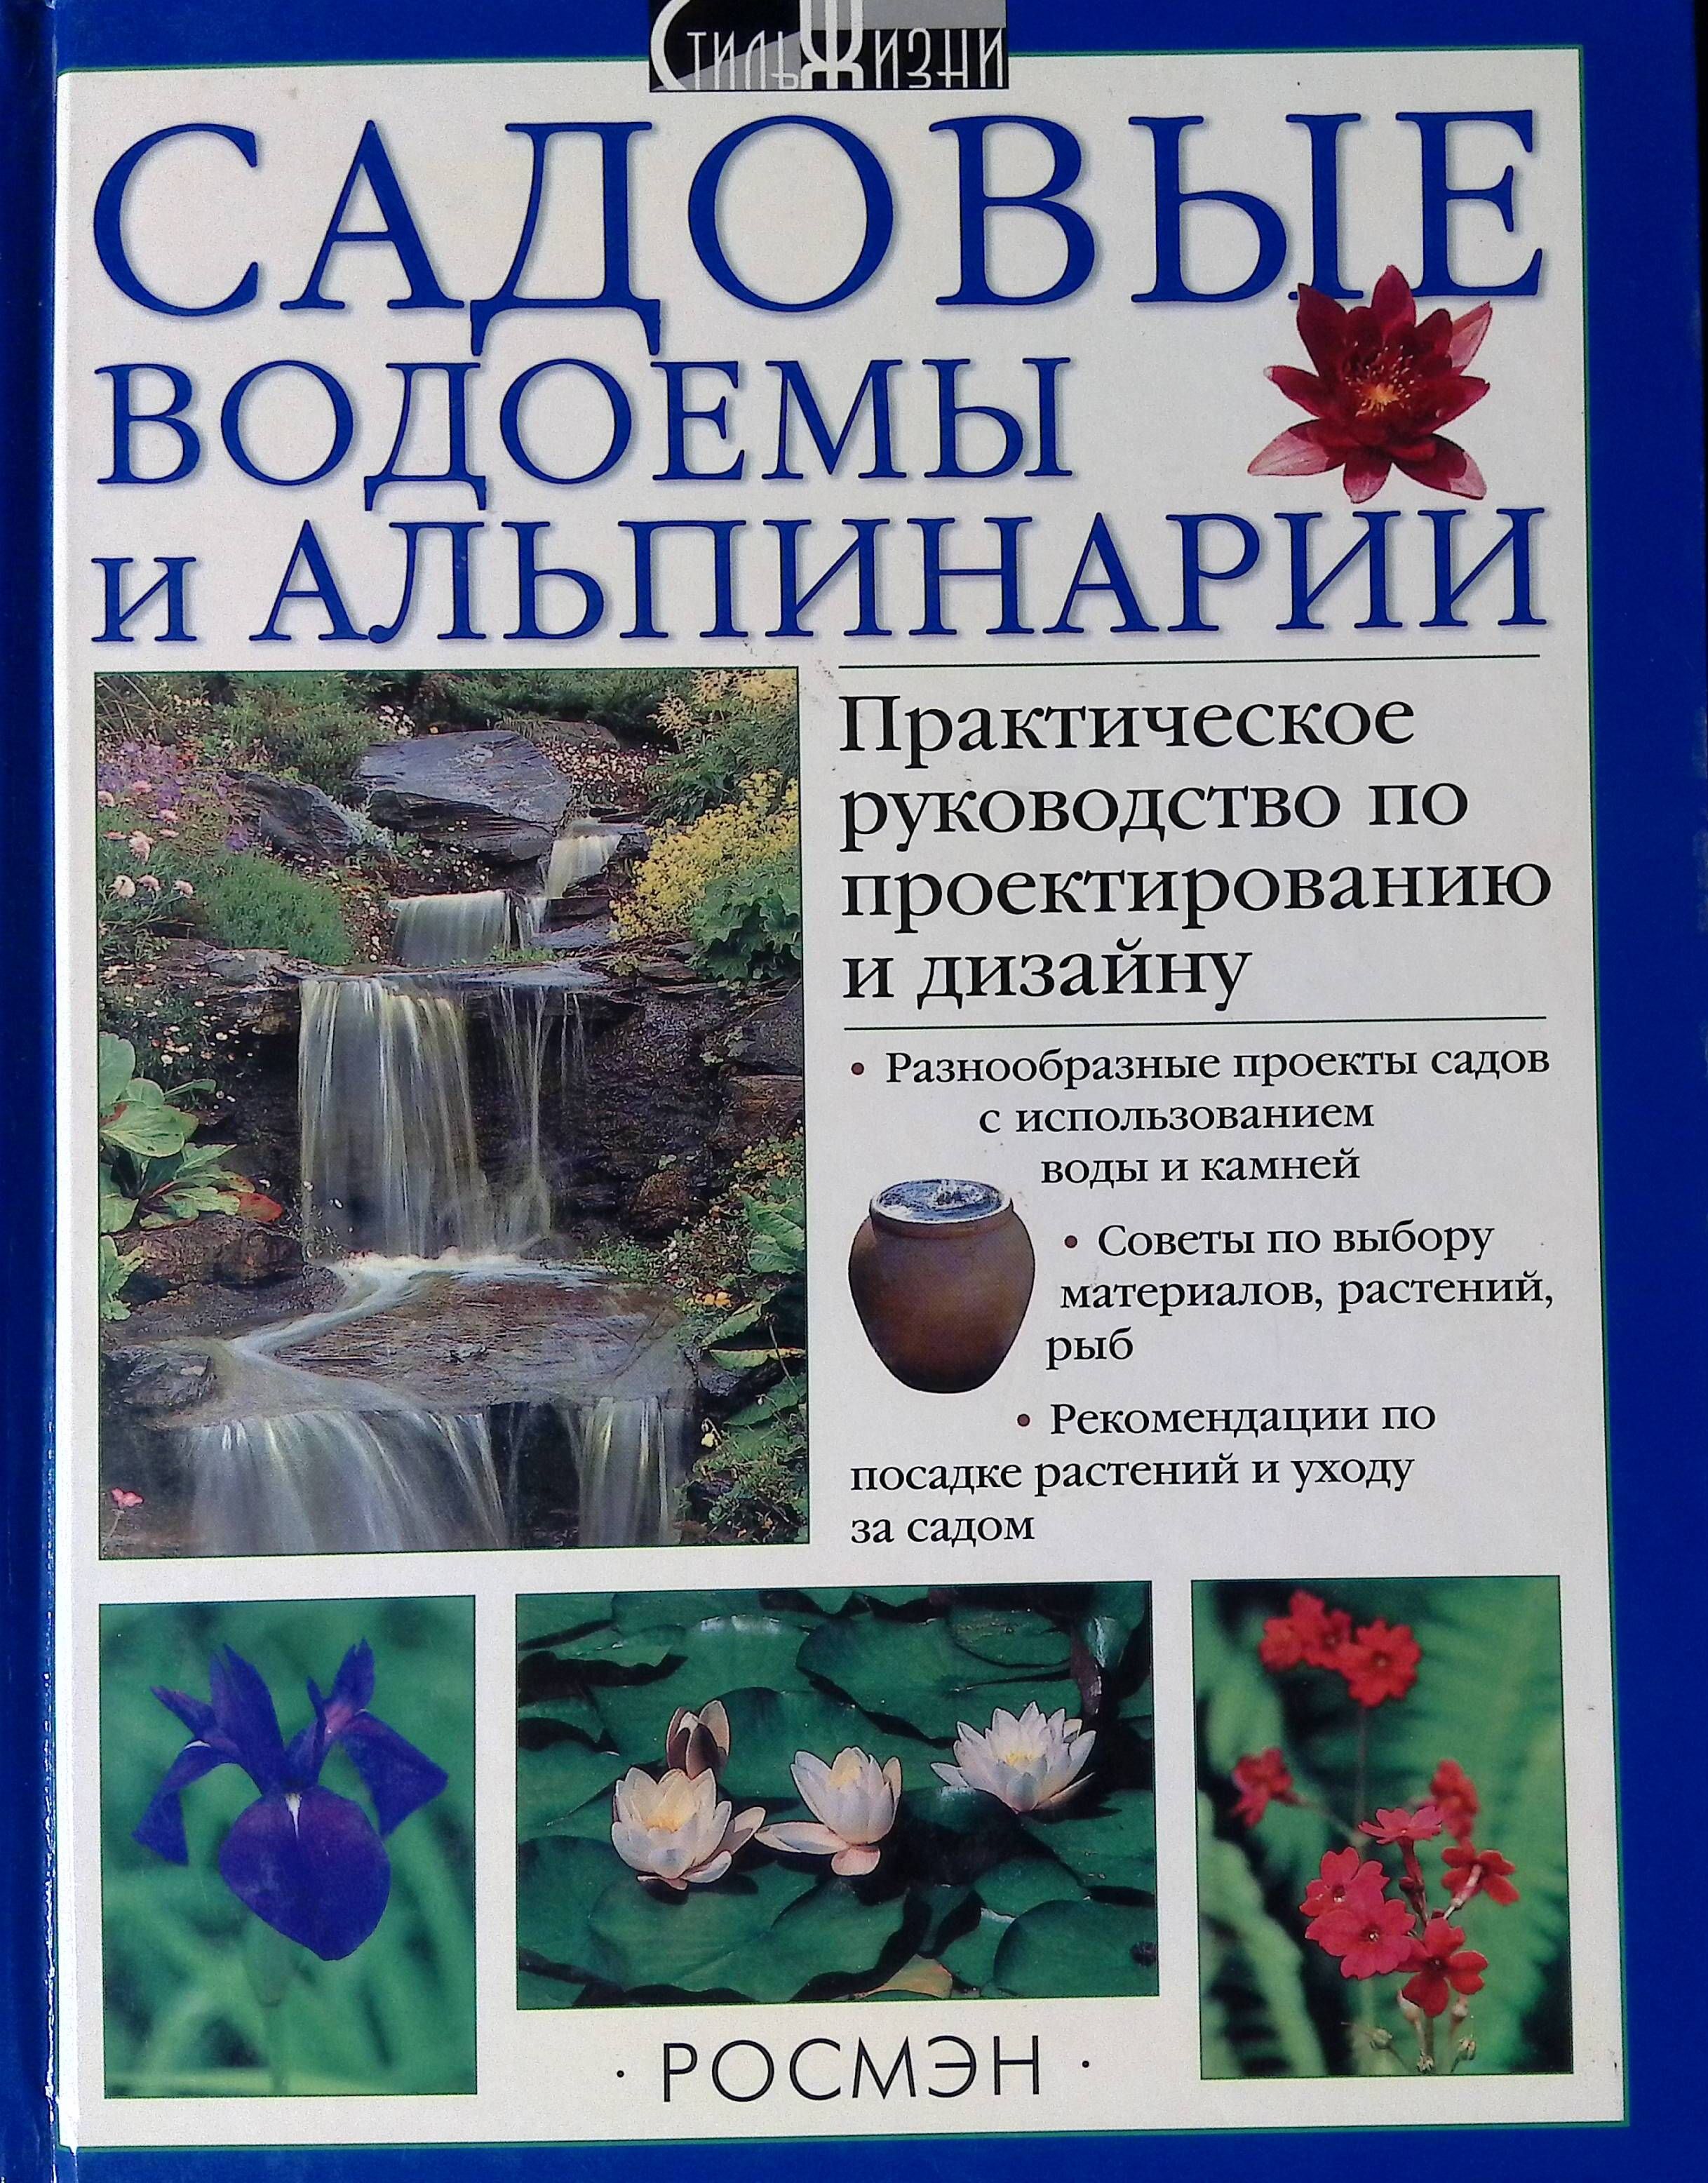 Альпинарий и водоем в саду: особенности и советы – Д.Г. Хессайон